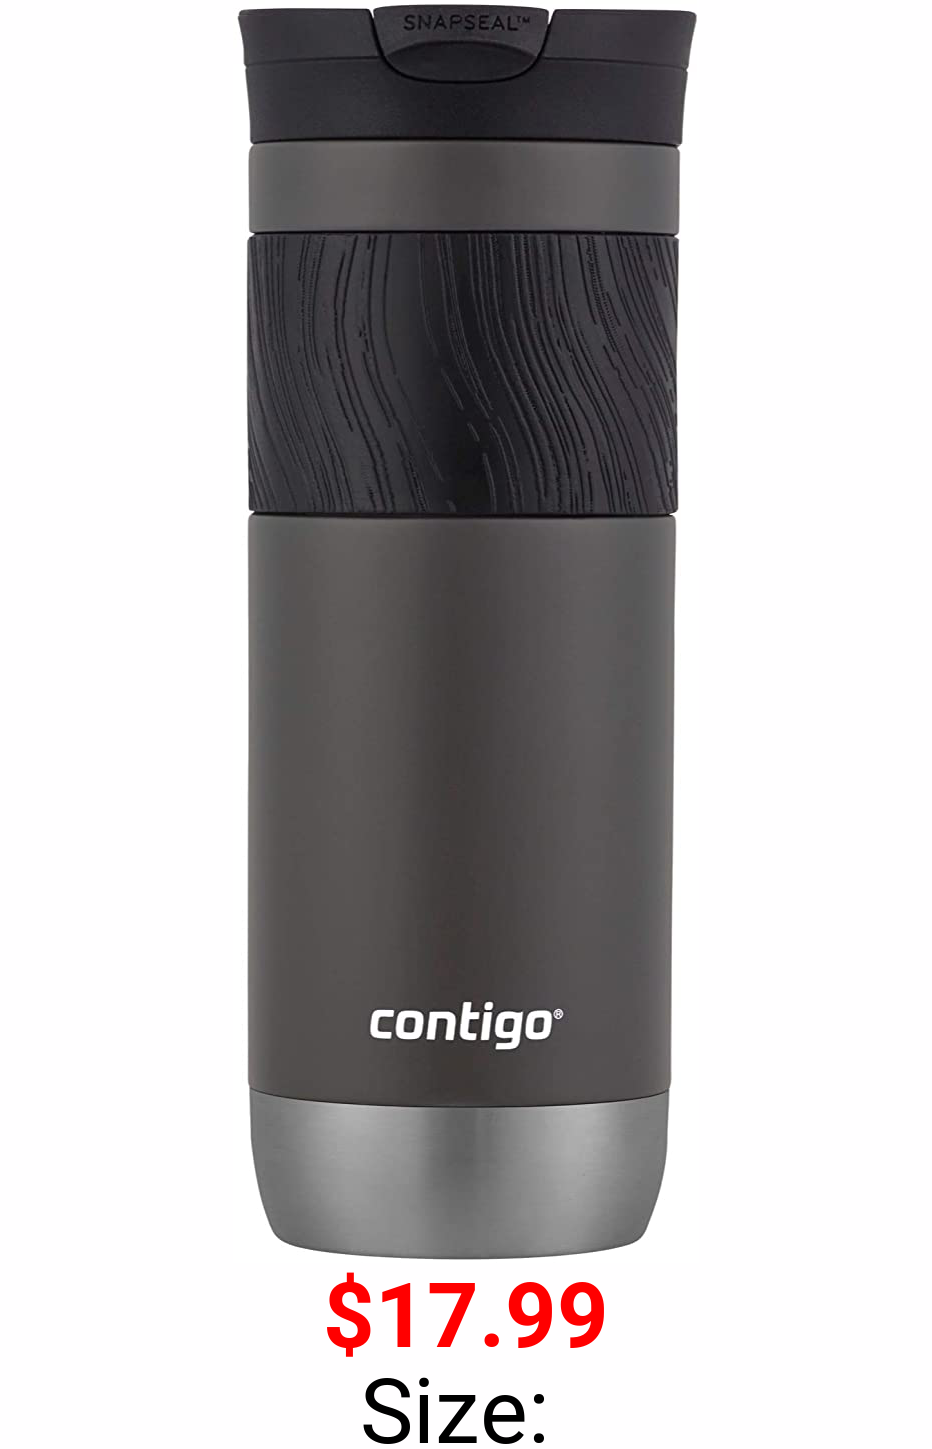 Contigo - 2094850 Contigo Snapseal Insulated Travel Mug, 20 oz, Sake